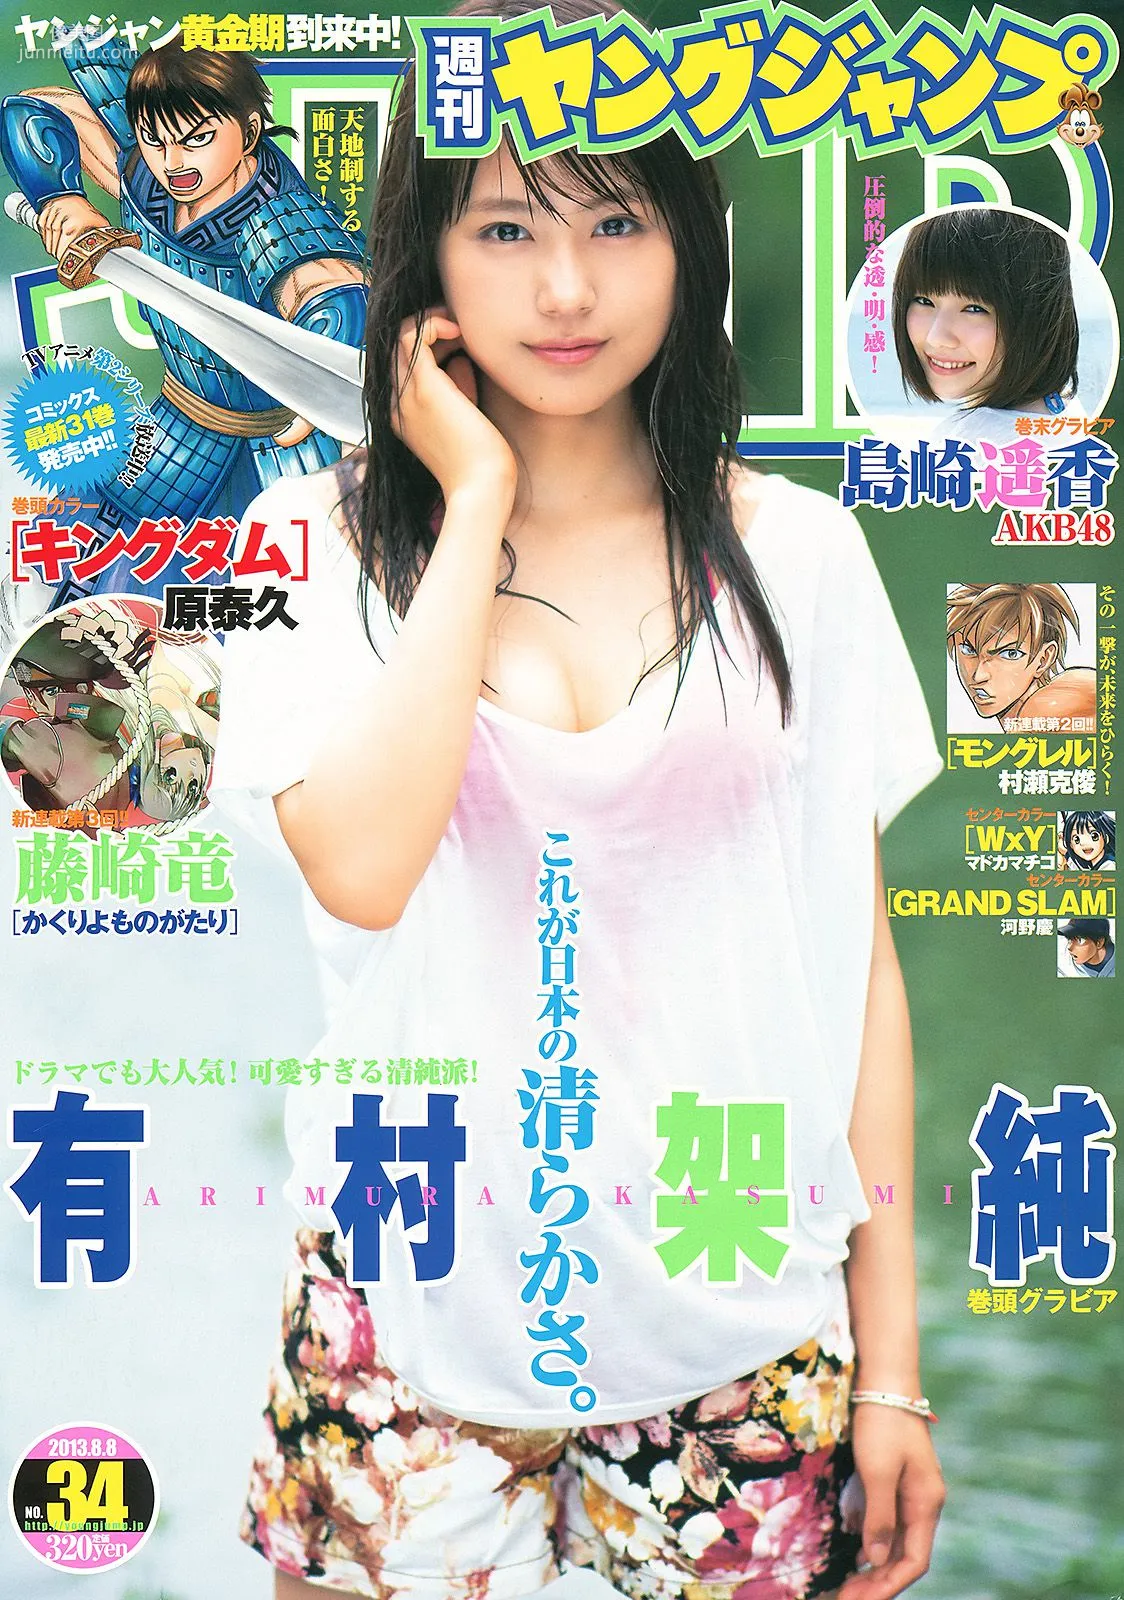 有村架純 島崎遙香 [Weekly Young Jump] 2013年No.34 写真杂志1